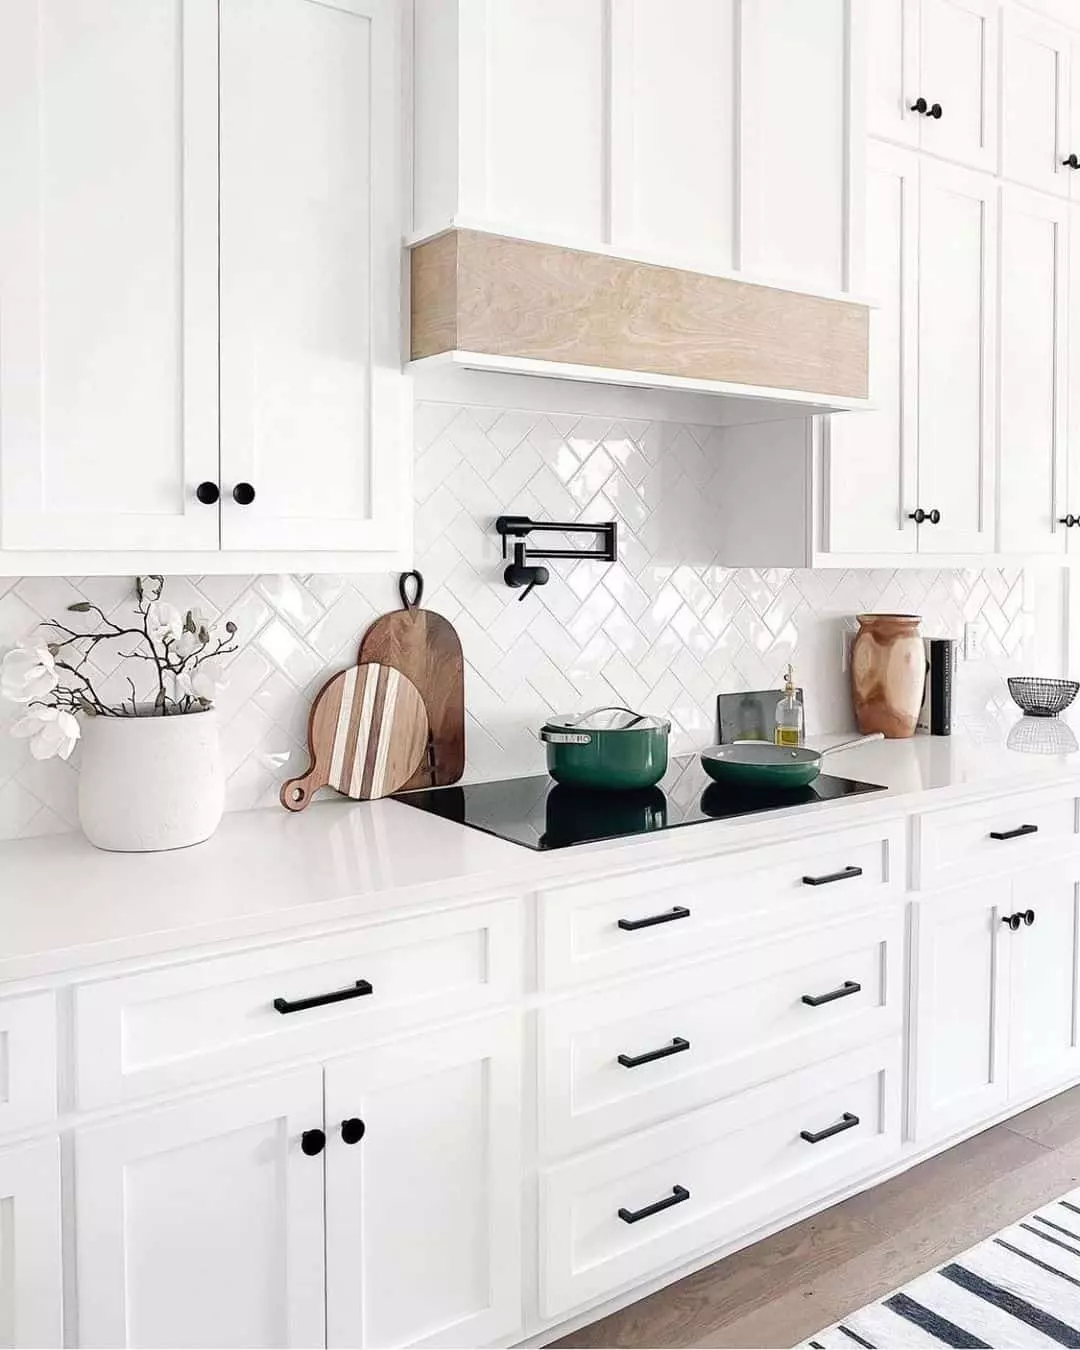 White Herringbone Backsplash Tile Ideas; Modern white herringbone tile ideas. Minimalistic and geometric tiles for your kitchen backsplash!